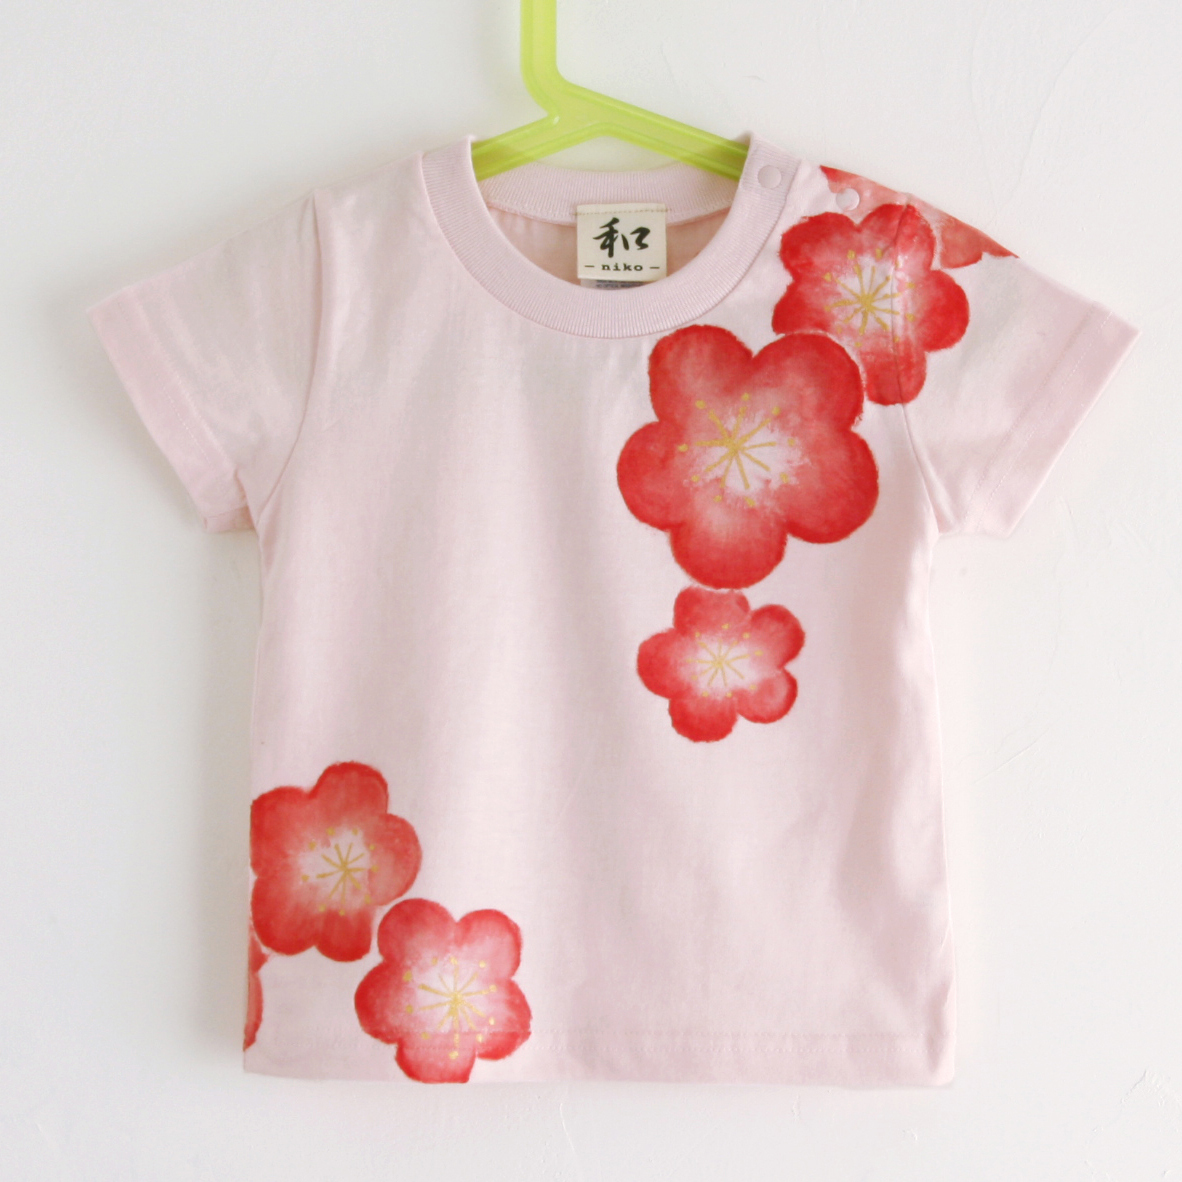 T-Shirt für Kinder, Größe 130, rosafarbenes T-Shirt mit Pflaumenblütenmuster, handgezeichnetes T-Shirt mit Pflaumenblütenmuster, kurze Ärmel, japanisches Muster, japanischer Stil, Retro, handgefertigt, Spitzen, Kurzärmeliges T-shirt, 130 (125 ~ 134 cm)